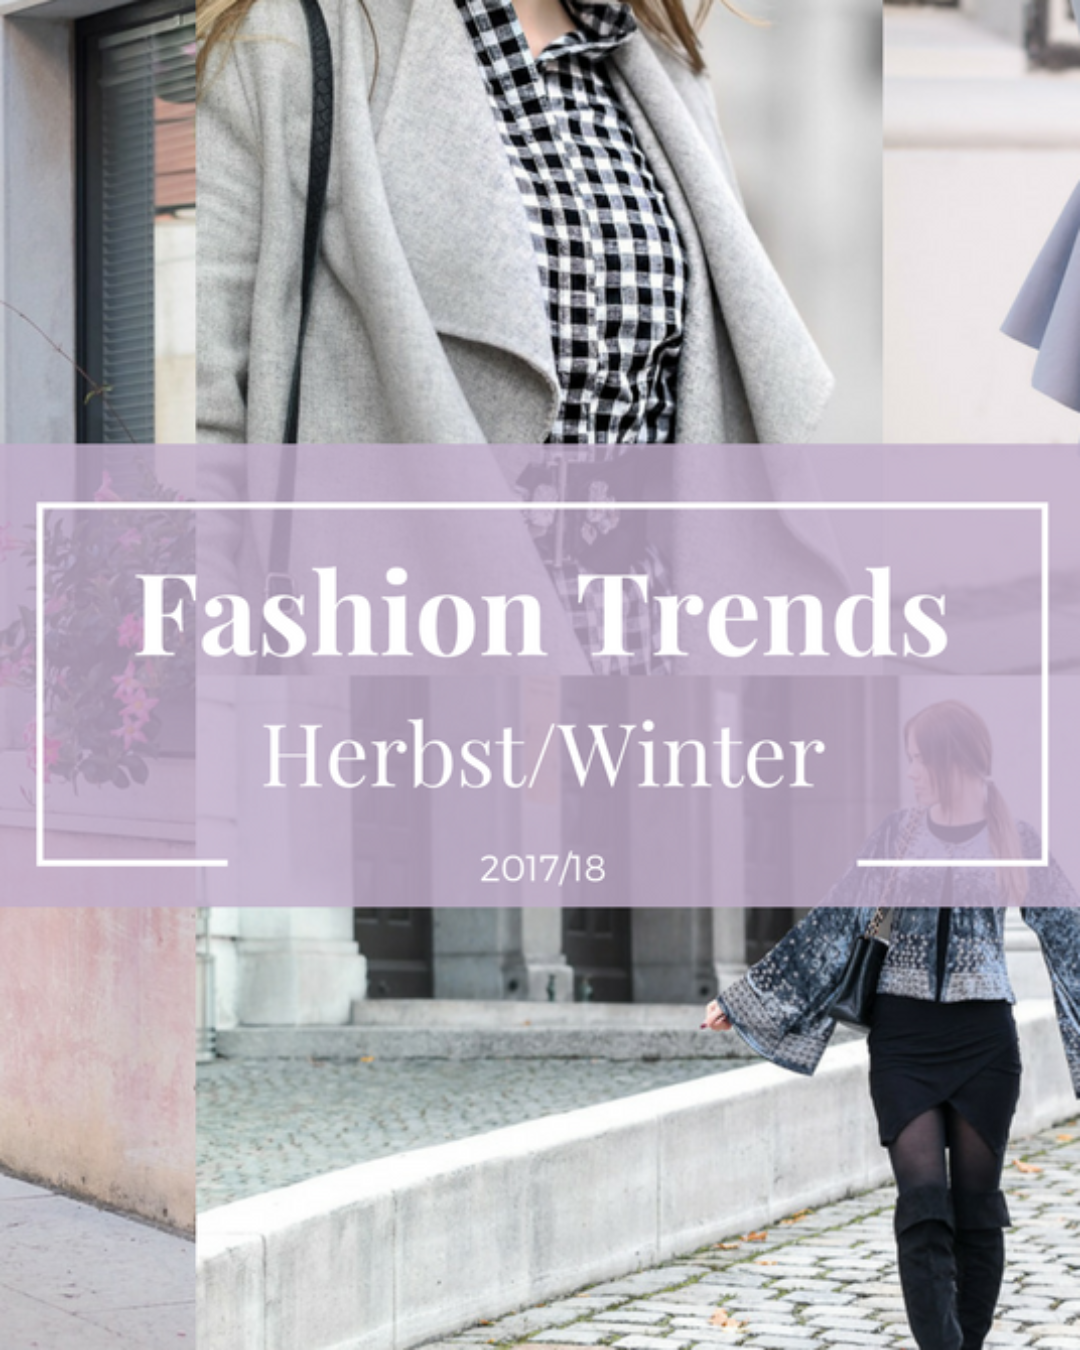 Fashion Trends im Herbst/Winter 2017/18